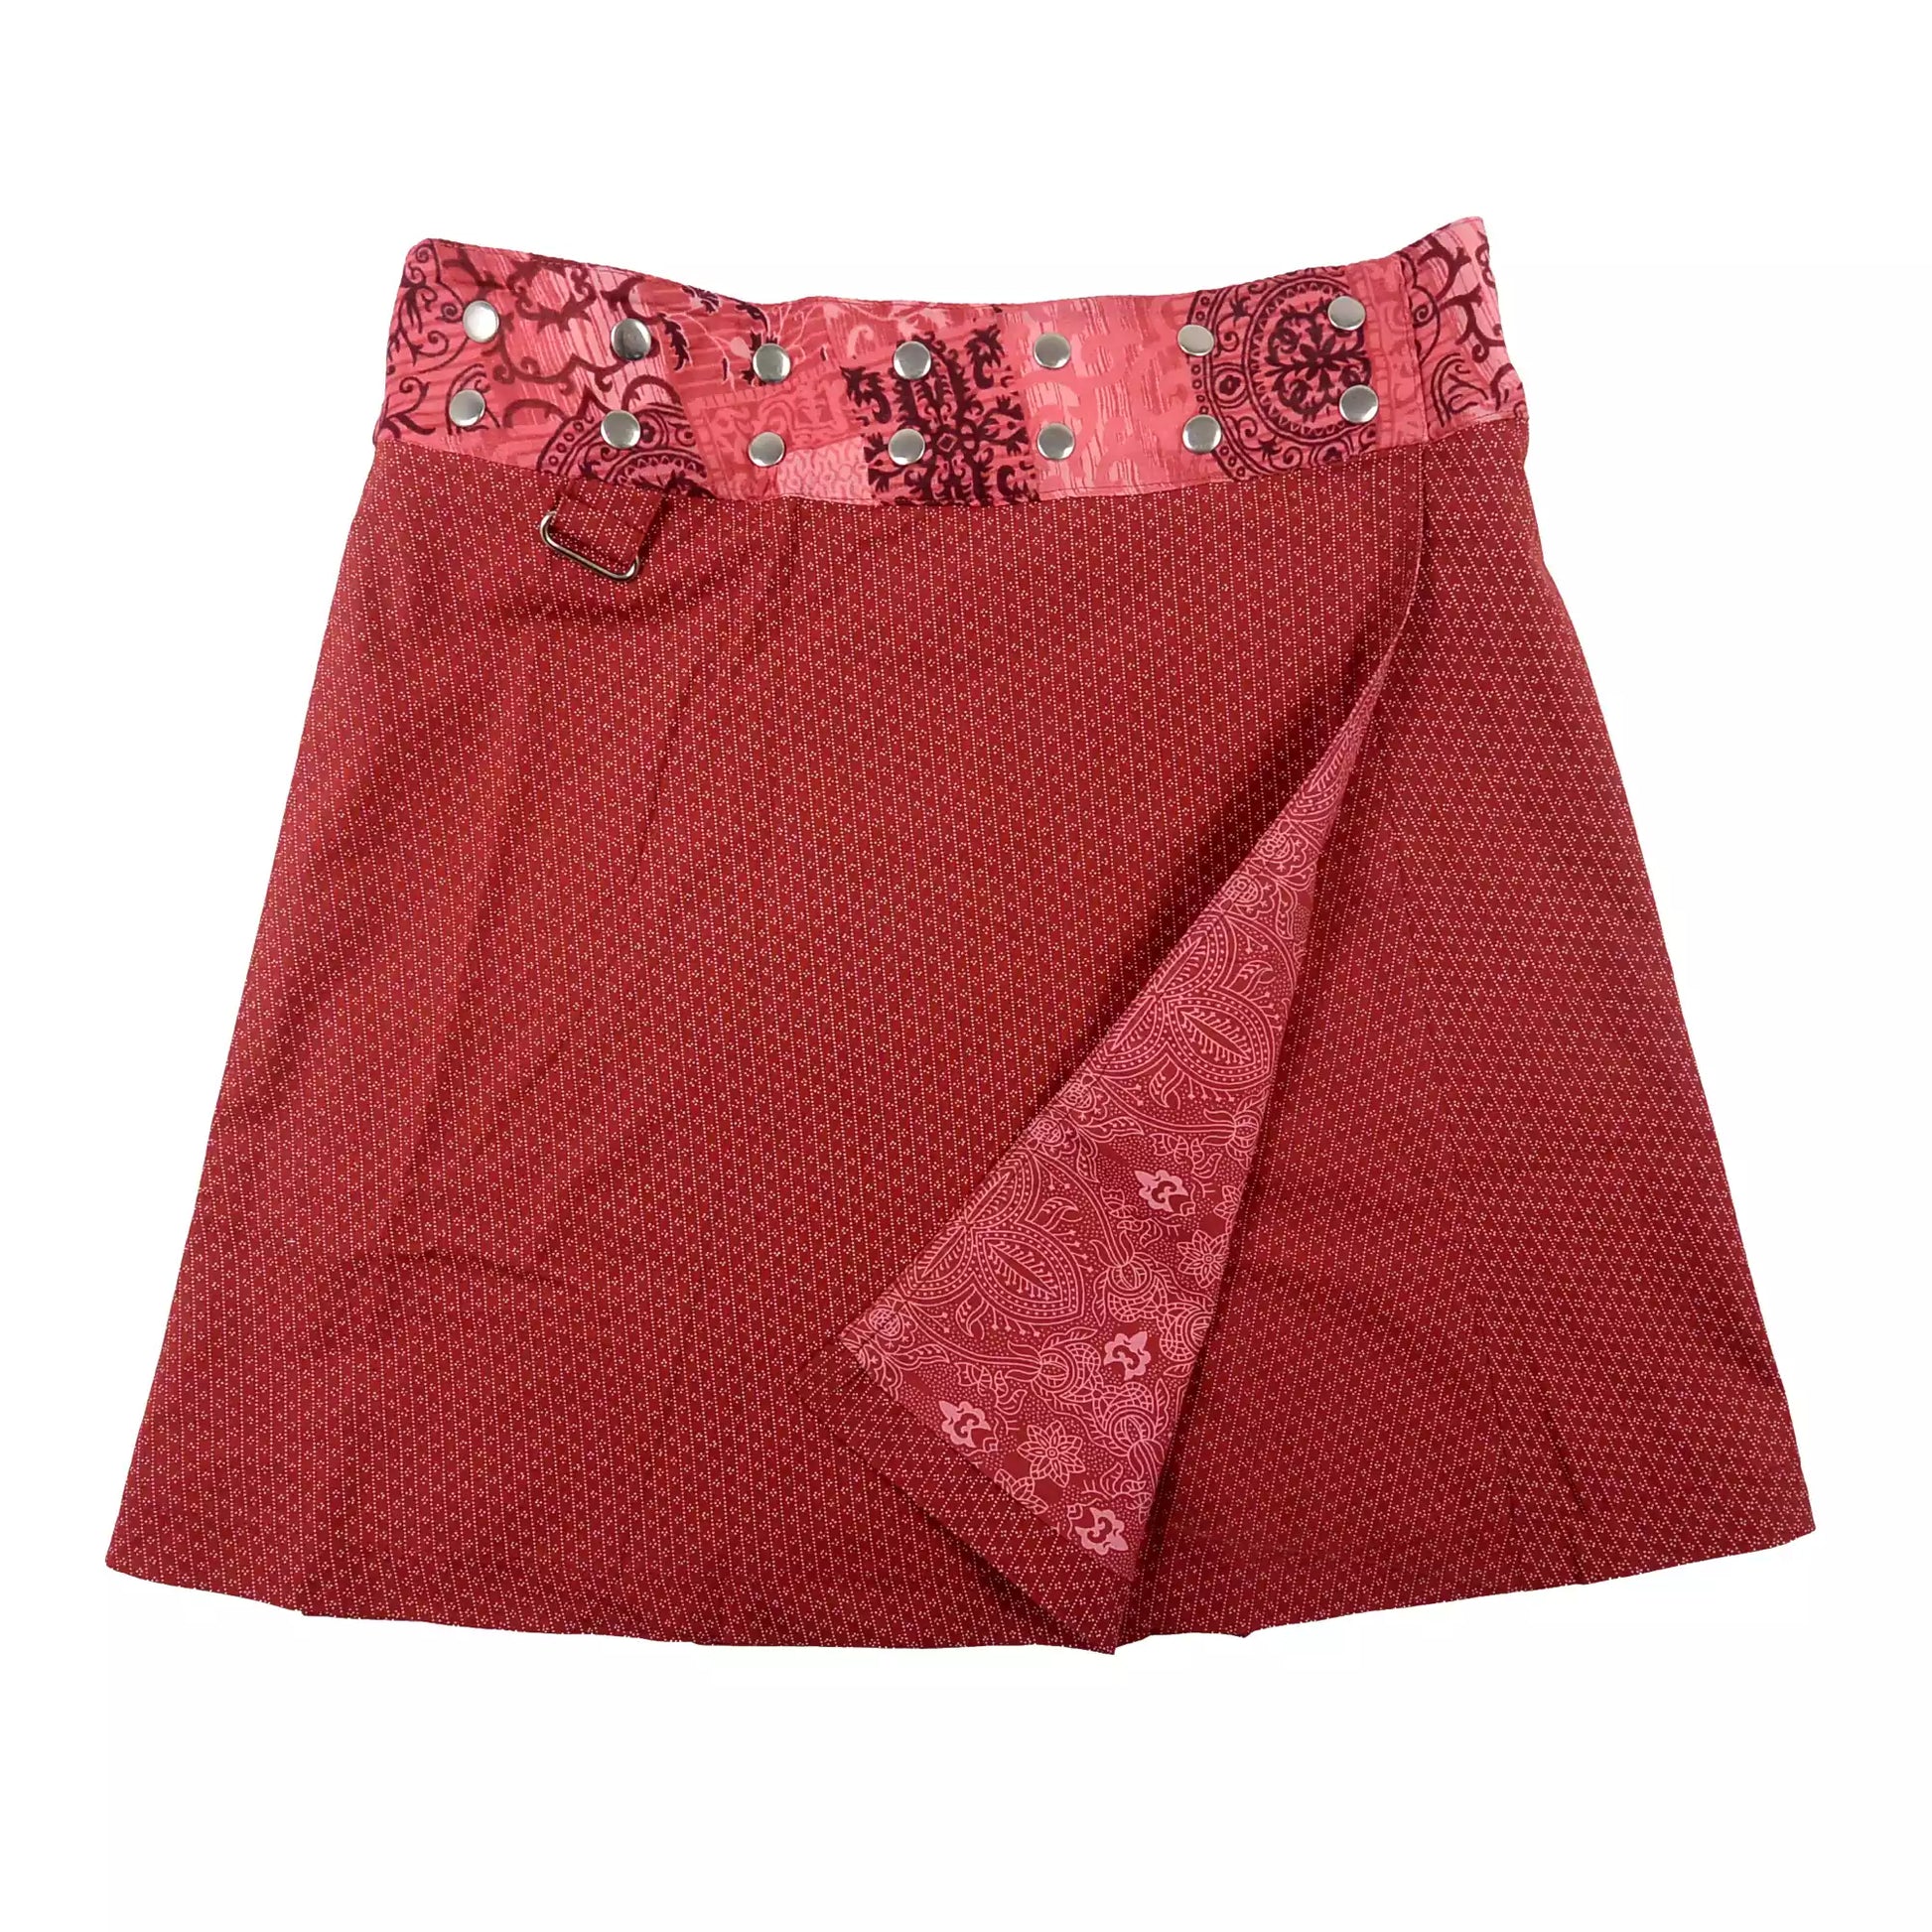 Wenderock aus Baumwolle, Rot mit Muster aus kleinen Punkten. An der Seite am Bund, gibt es zwei Metallringe zum Anhängen einer kleinen Stofftasche.